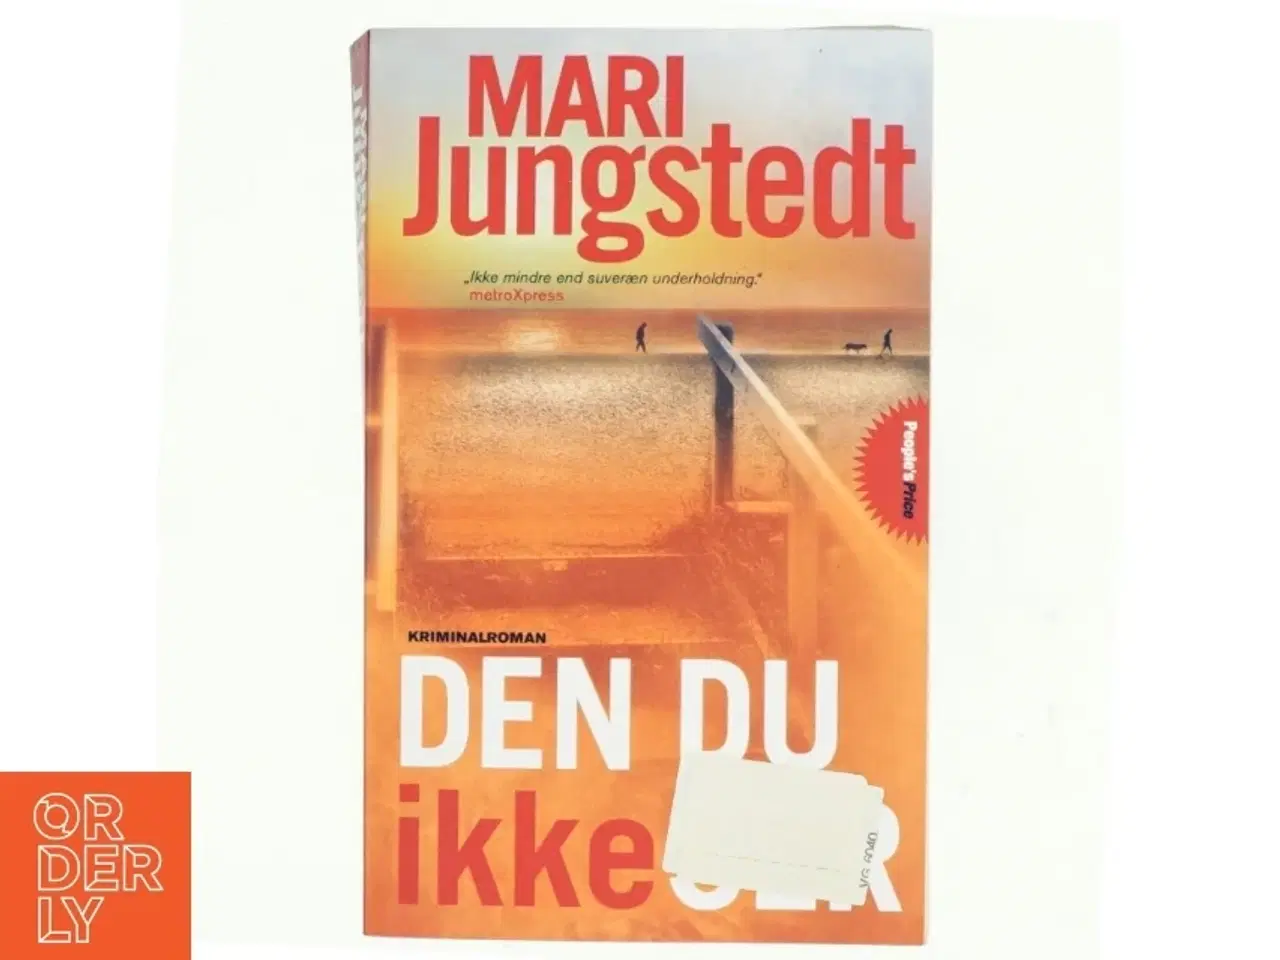 Billede 1 - Den du ikke ser : kriminalroman af Mari Jungstedt (Bog)